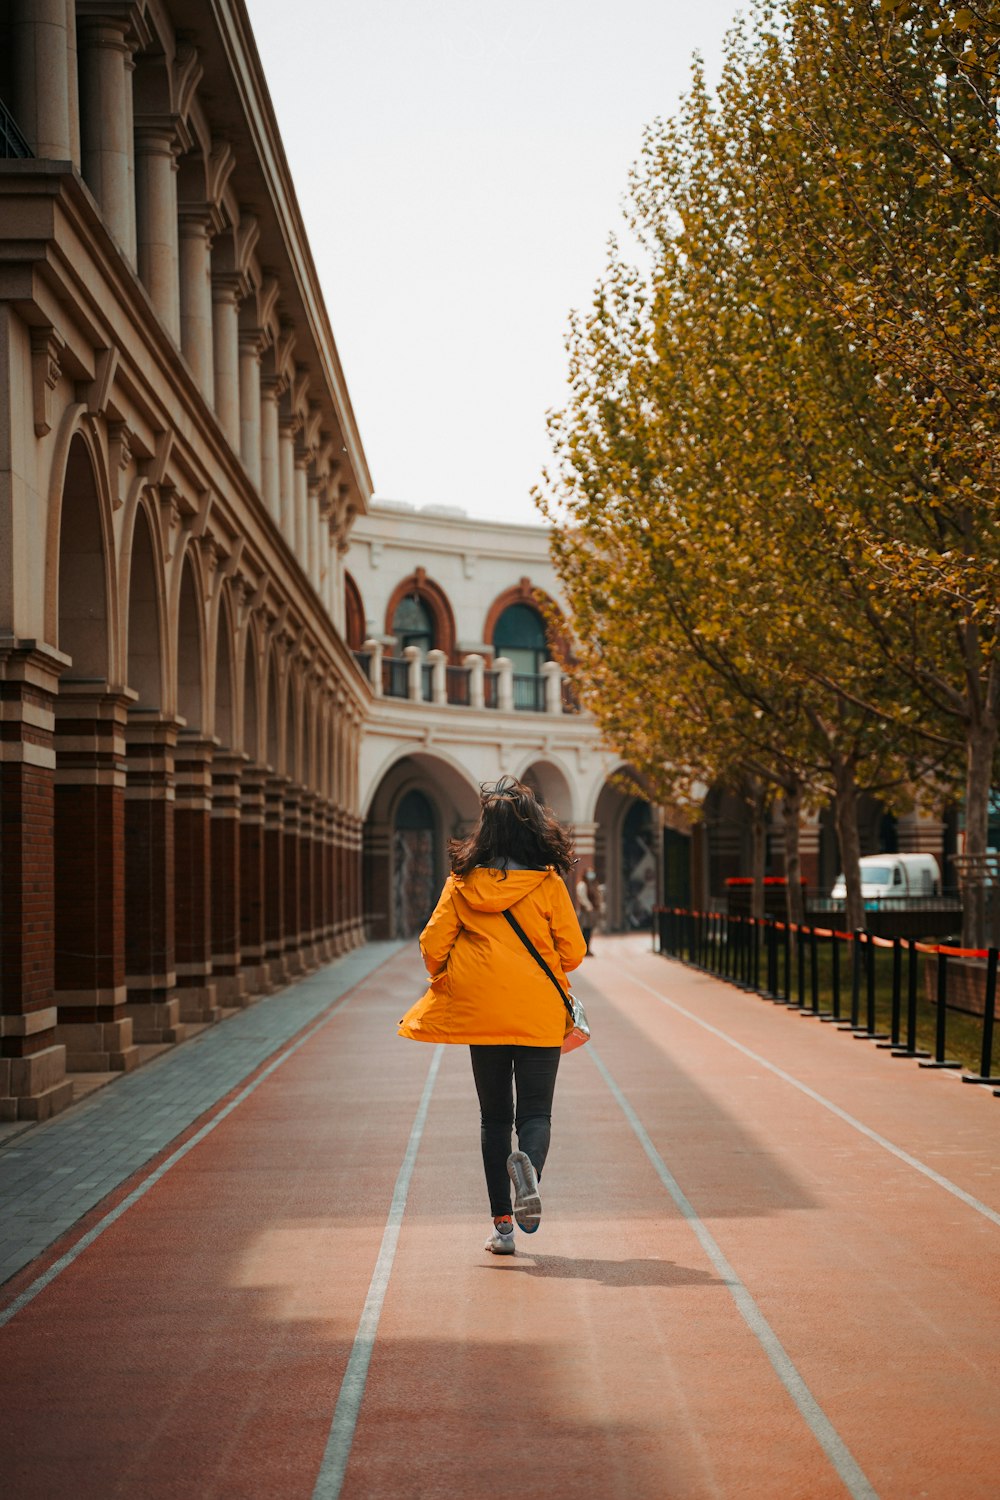 Frau im roten Kittel geht tagsüber auf dem Bürgersteig spazieren